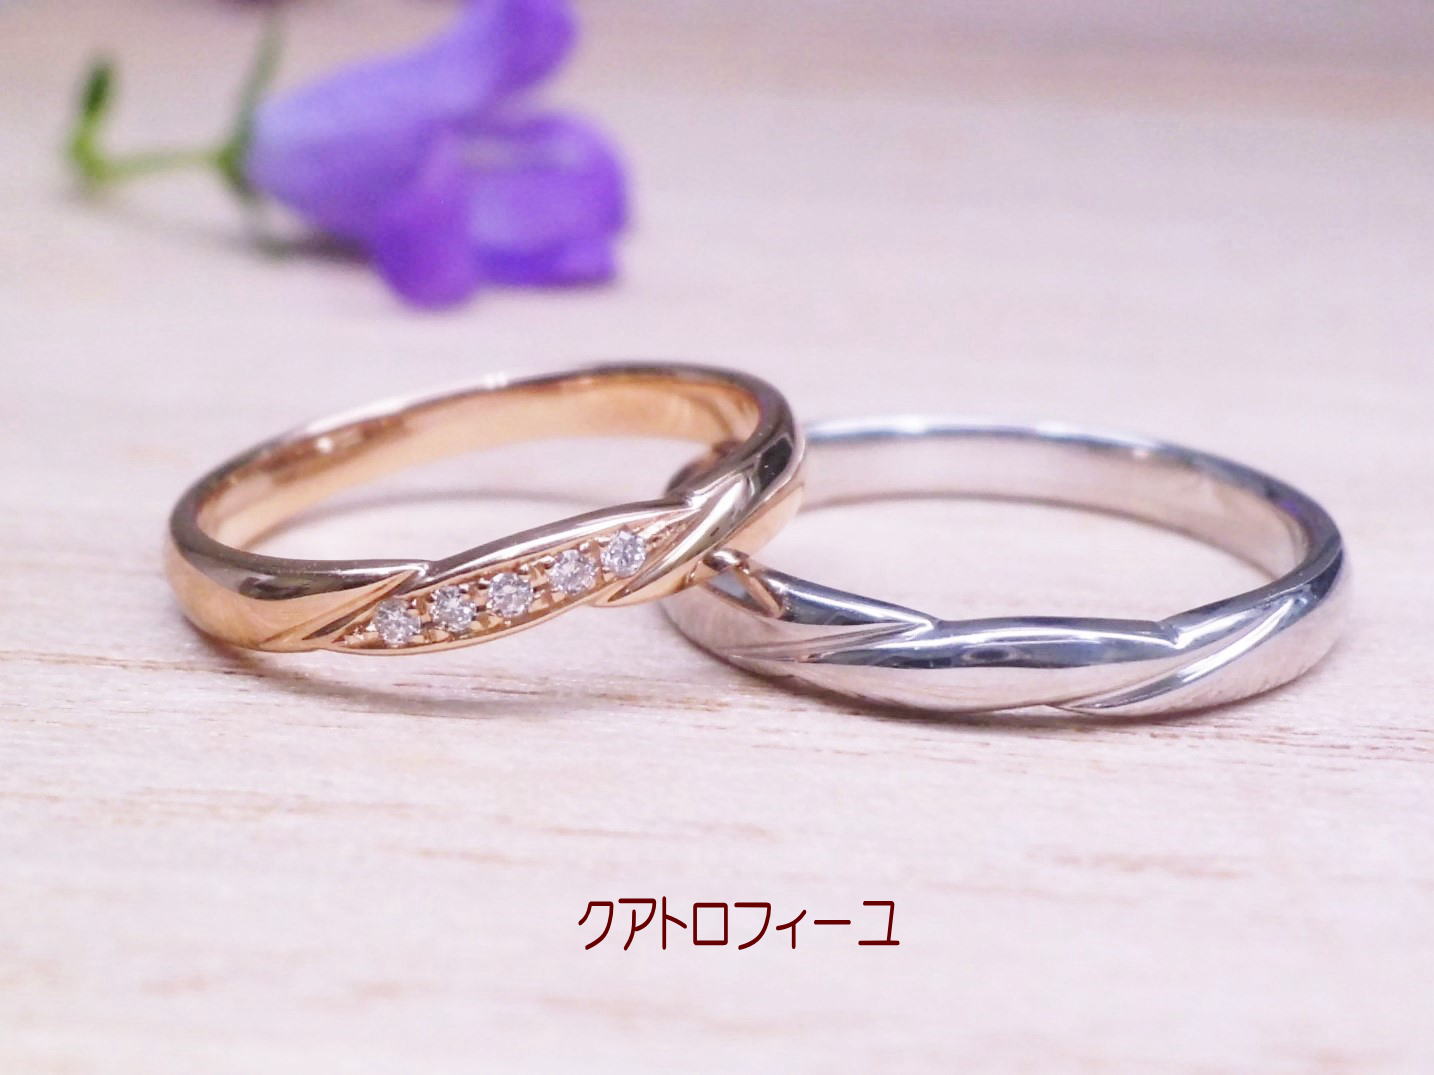 クアトロフィーユ・結婚指輪は、イエローゴールド、ピンクゴールド、ホワイトゴールド、プラチナ全ての素材で作ることが出来ます。